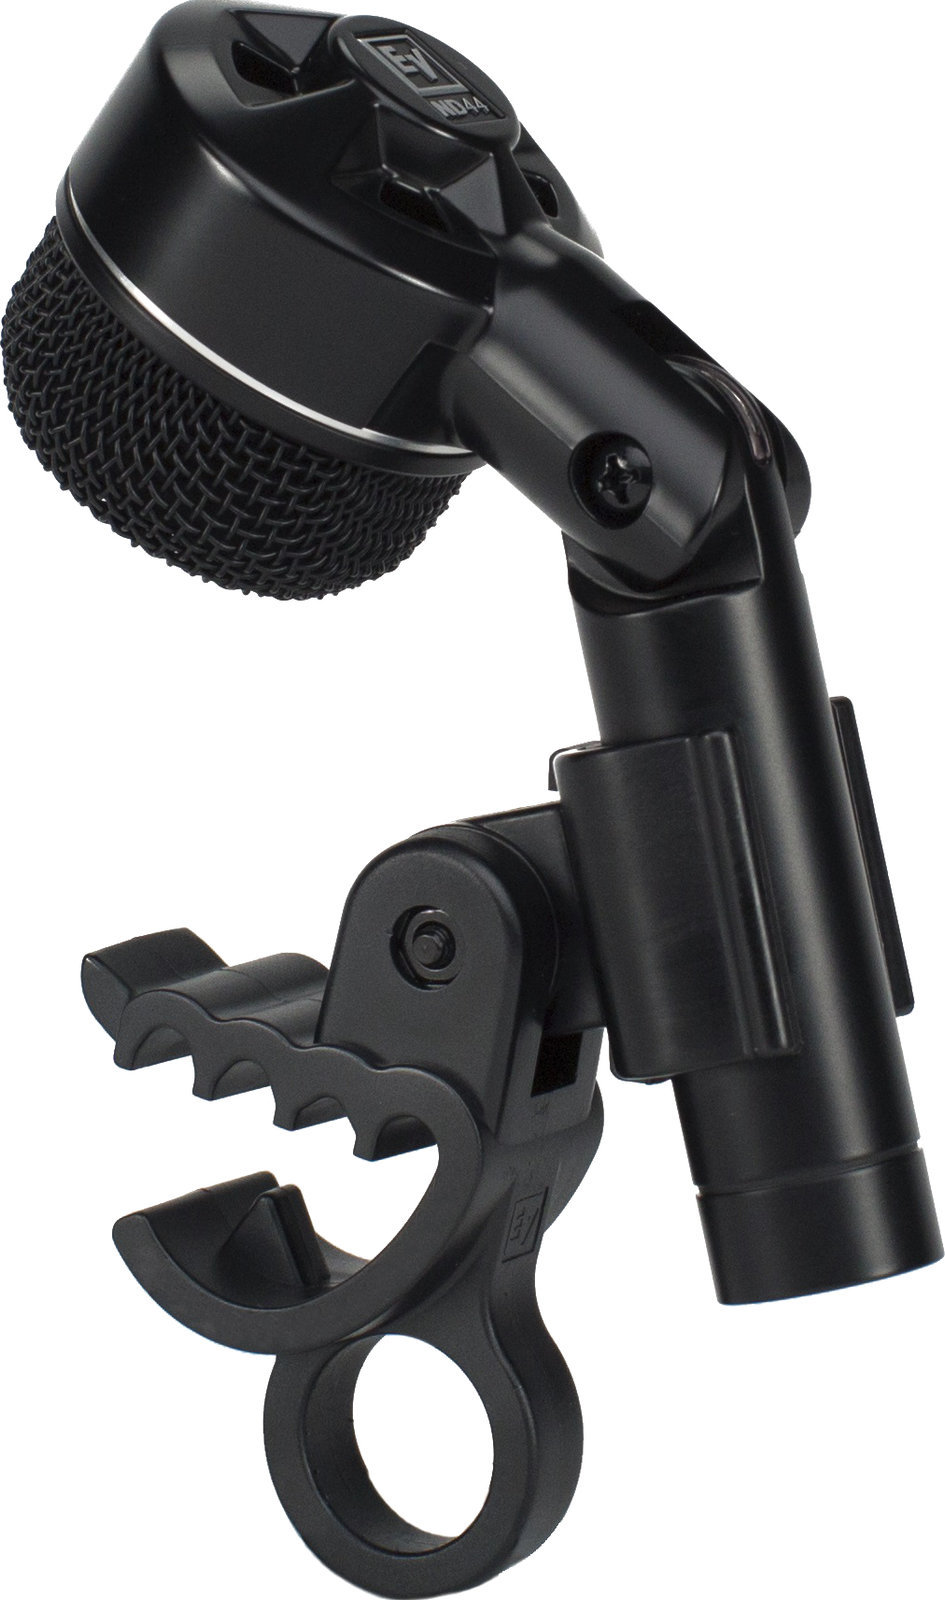 Kondenzátorový nástrojový mikrofon Electro Voice ND44 Dynamic Tight Cardioid Instrument Microphone